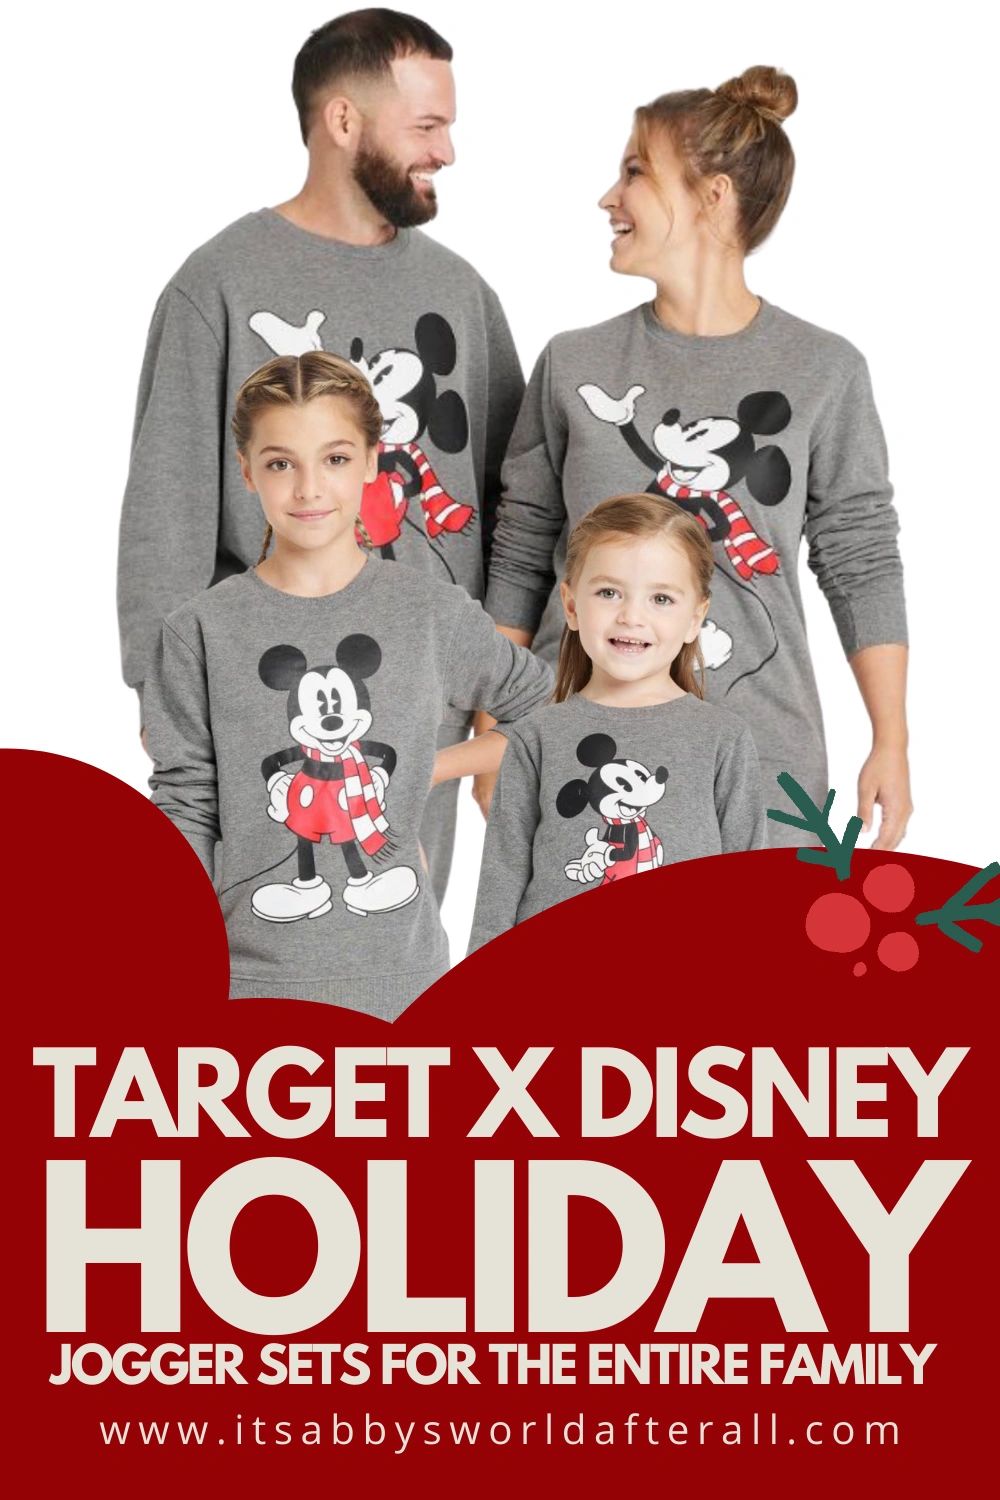 Disney : Gift Ideas for Women - Target